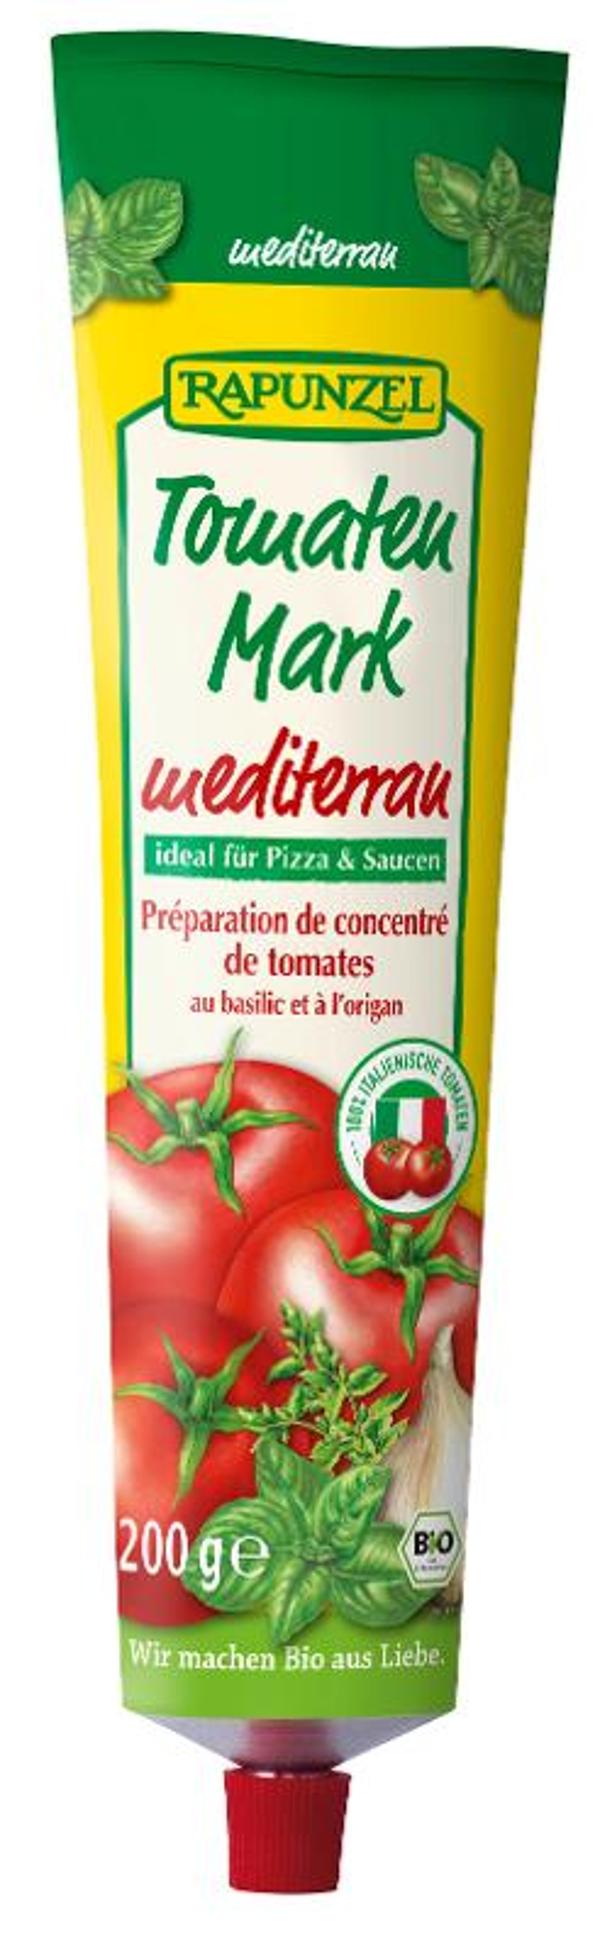 Produktfoto zu Tomatenmark Mediterran Tube